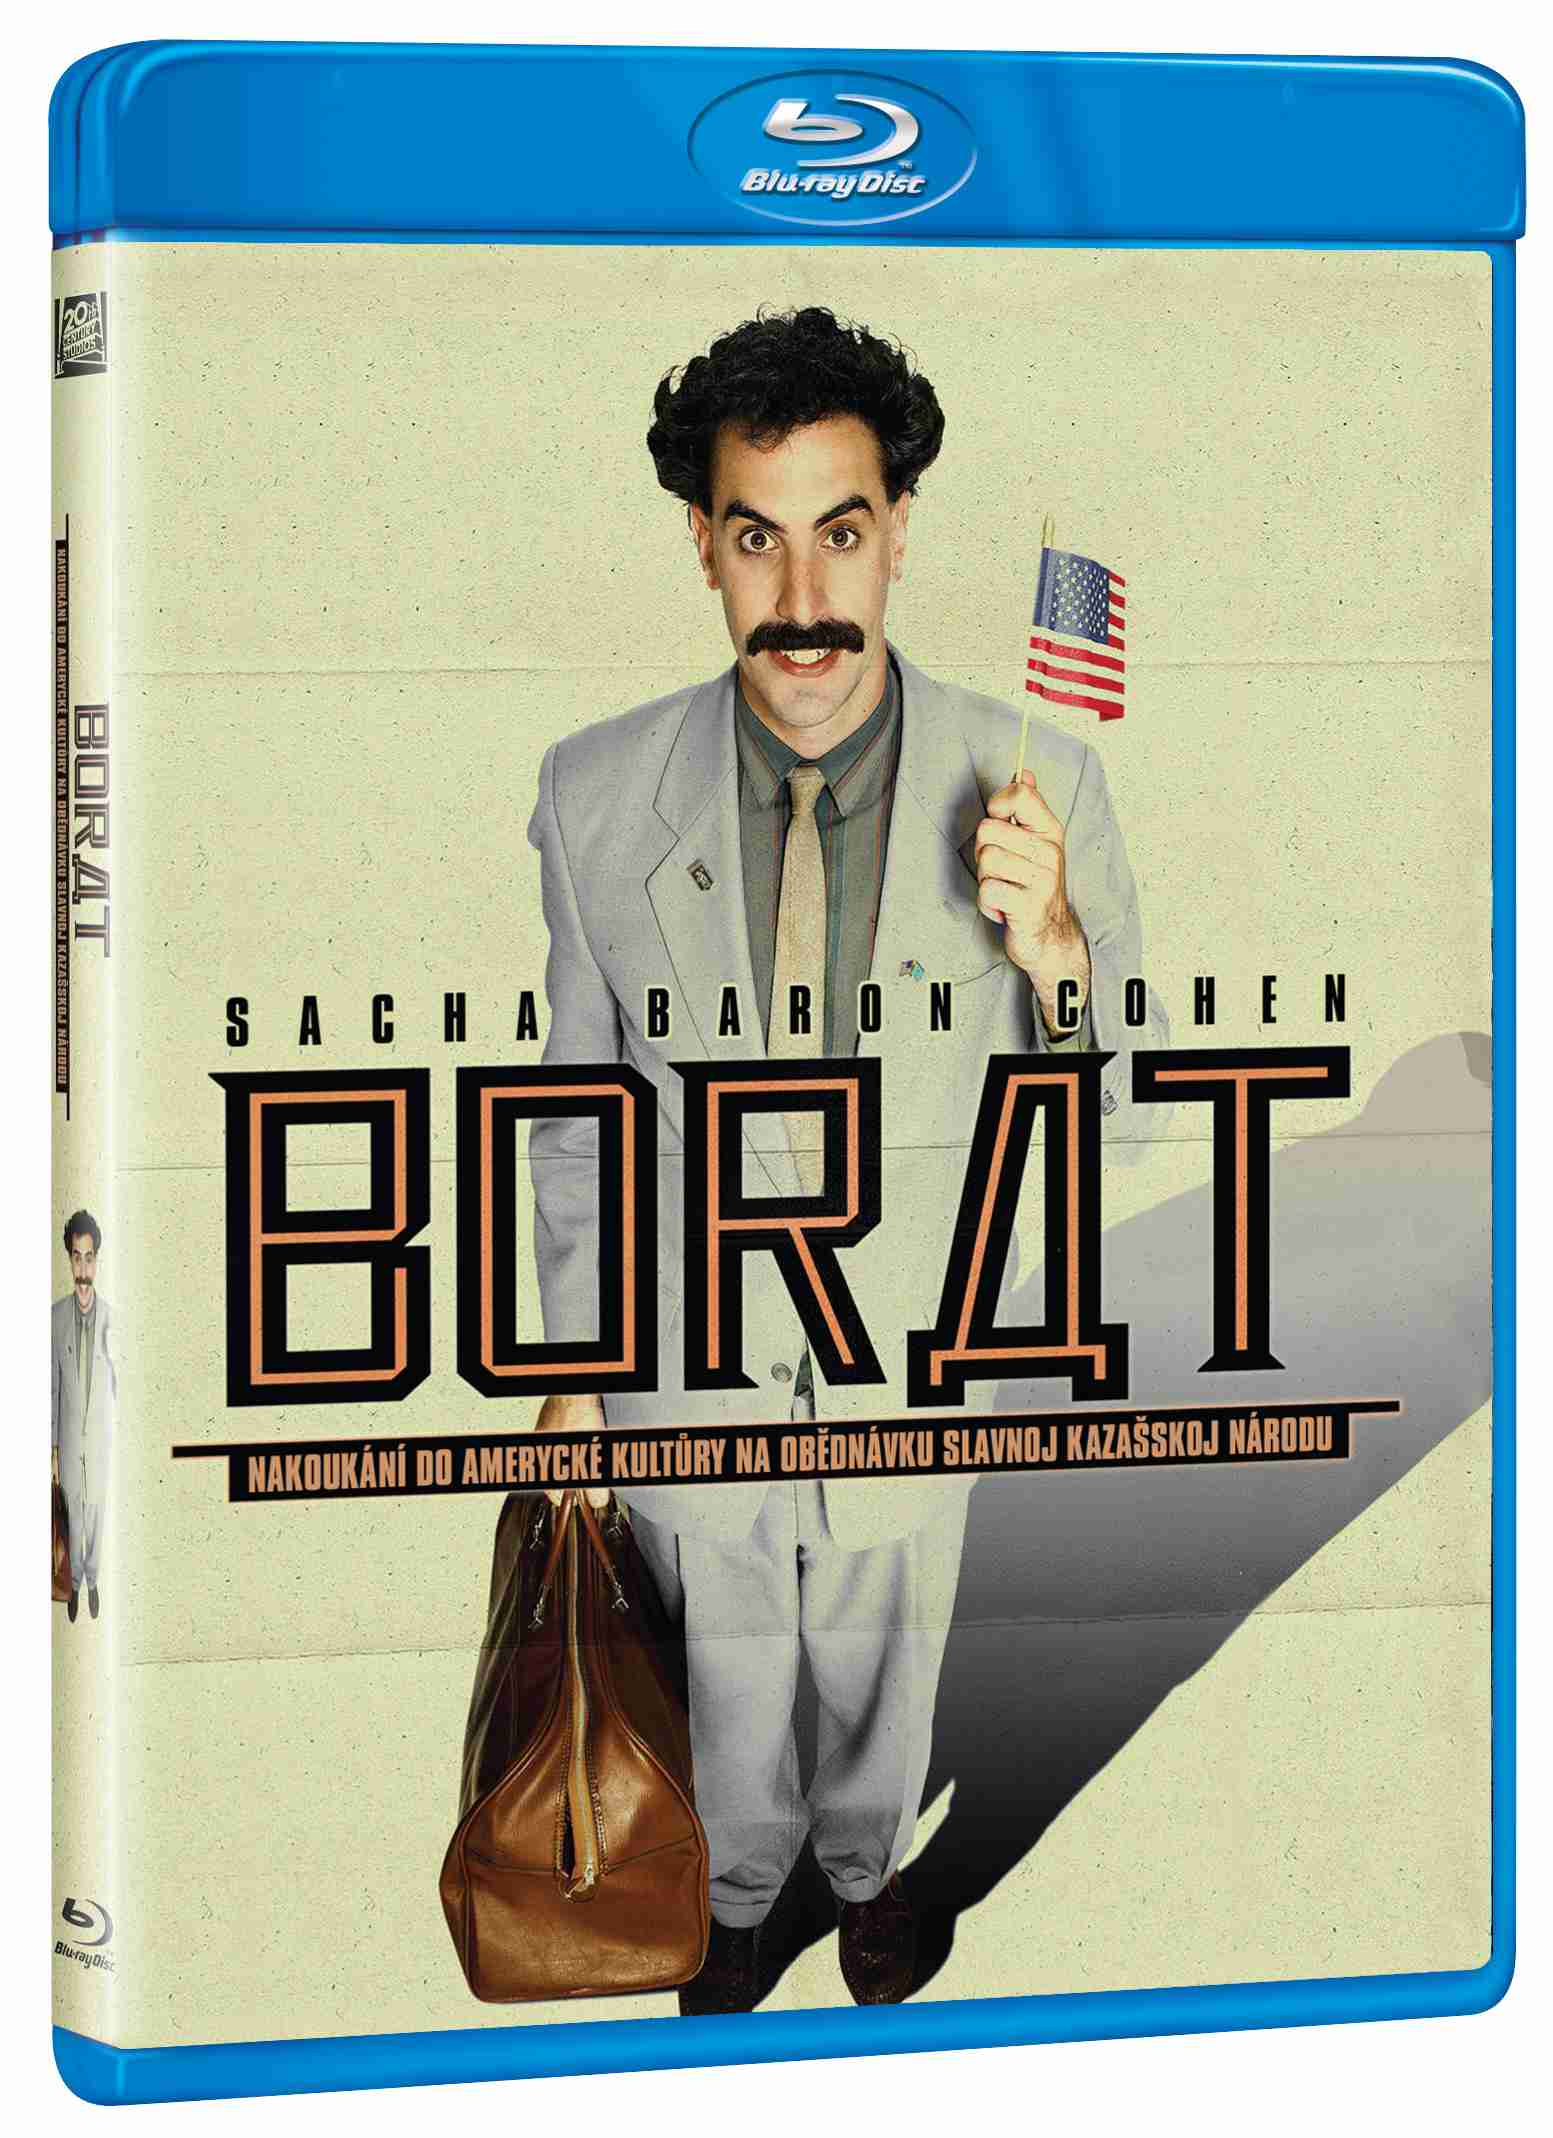 Borat - Blu-ray